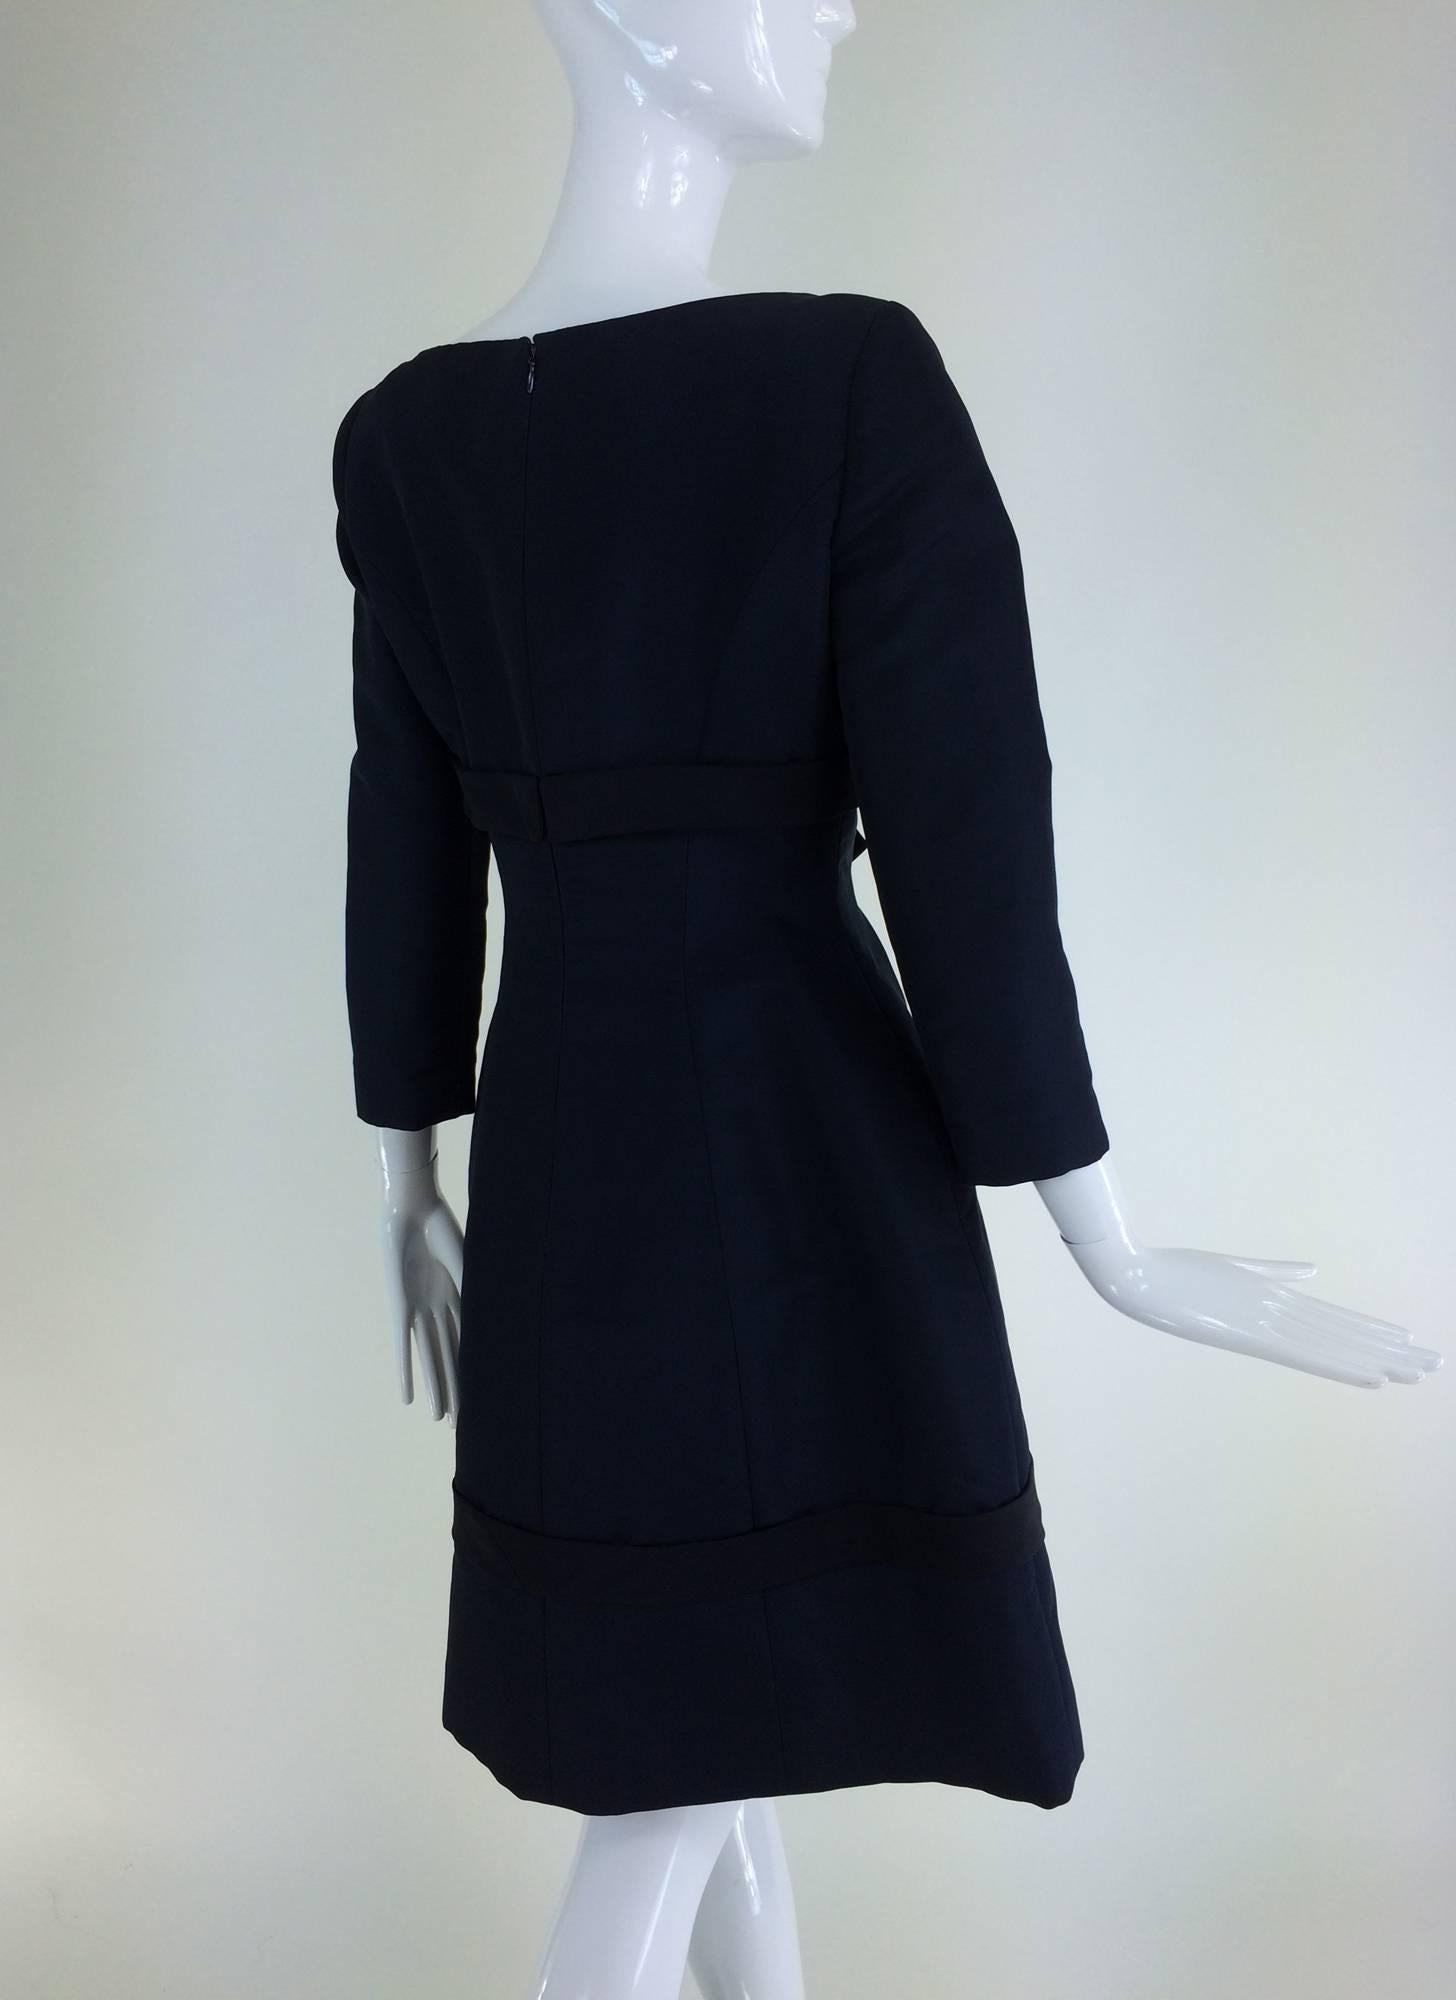 Women's Oscar de la Renta classic navy blue silk bow front dress late 1960s